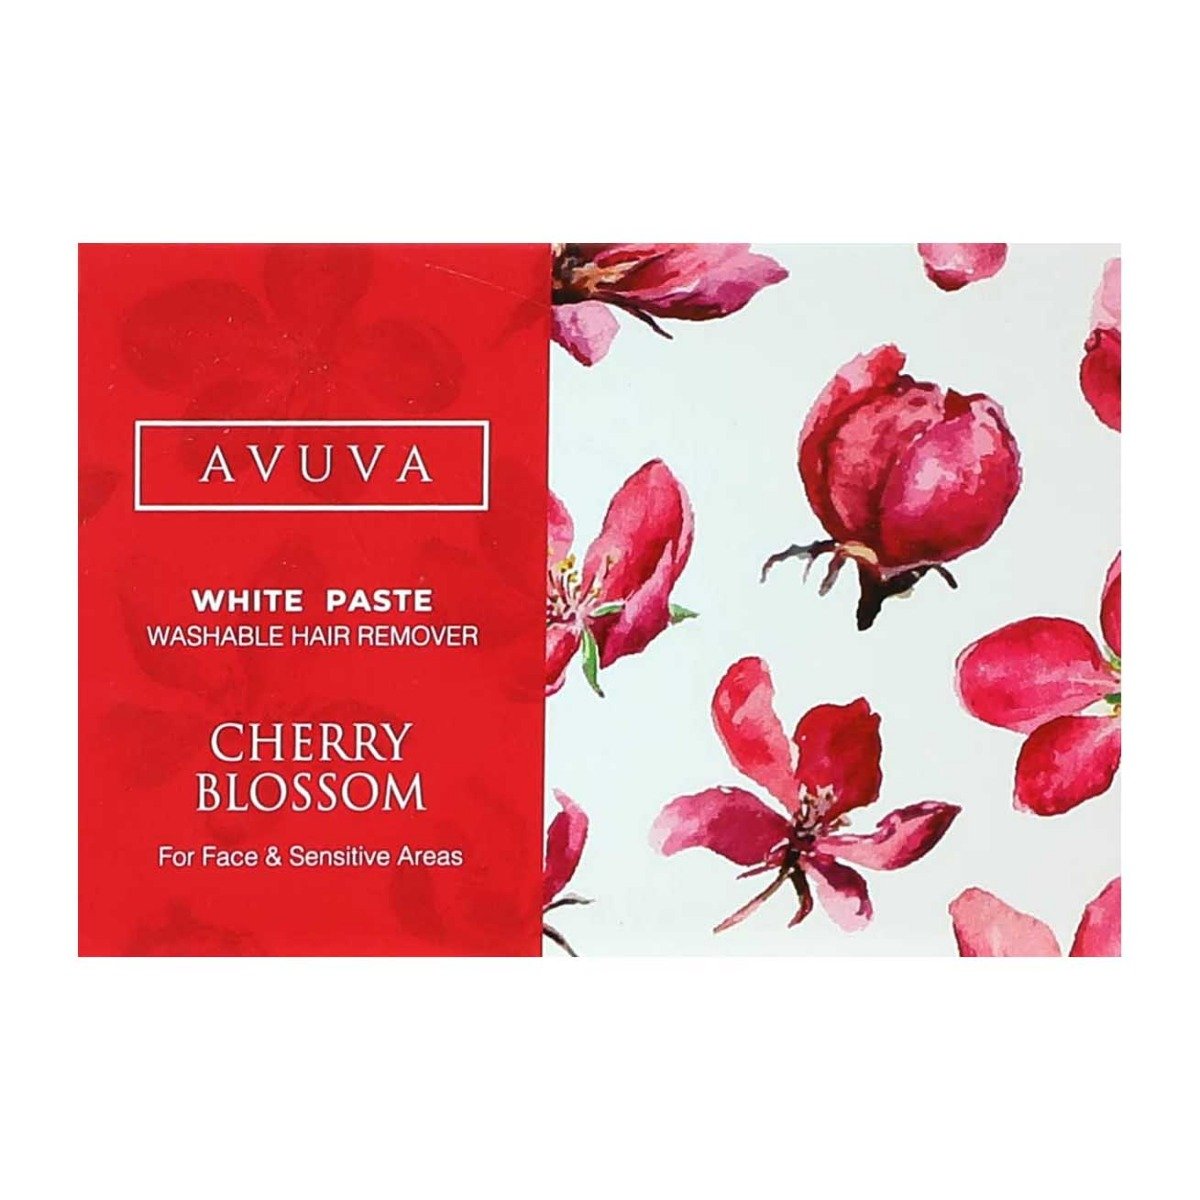 Avuva Cherry Blossom White Paste Washable Hair Remover – 100gm - Bloom Pharmacy